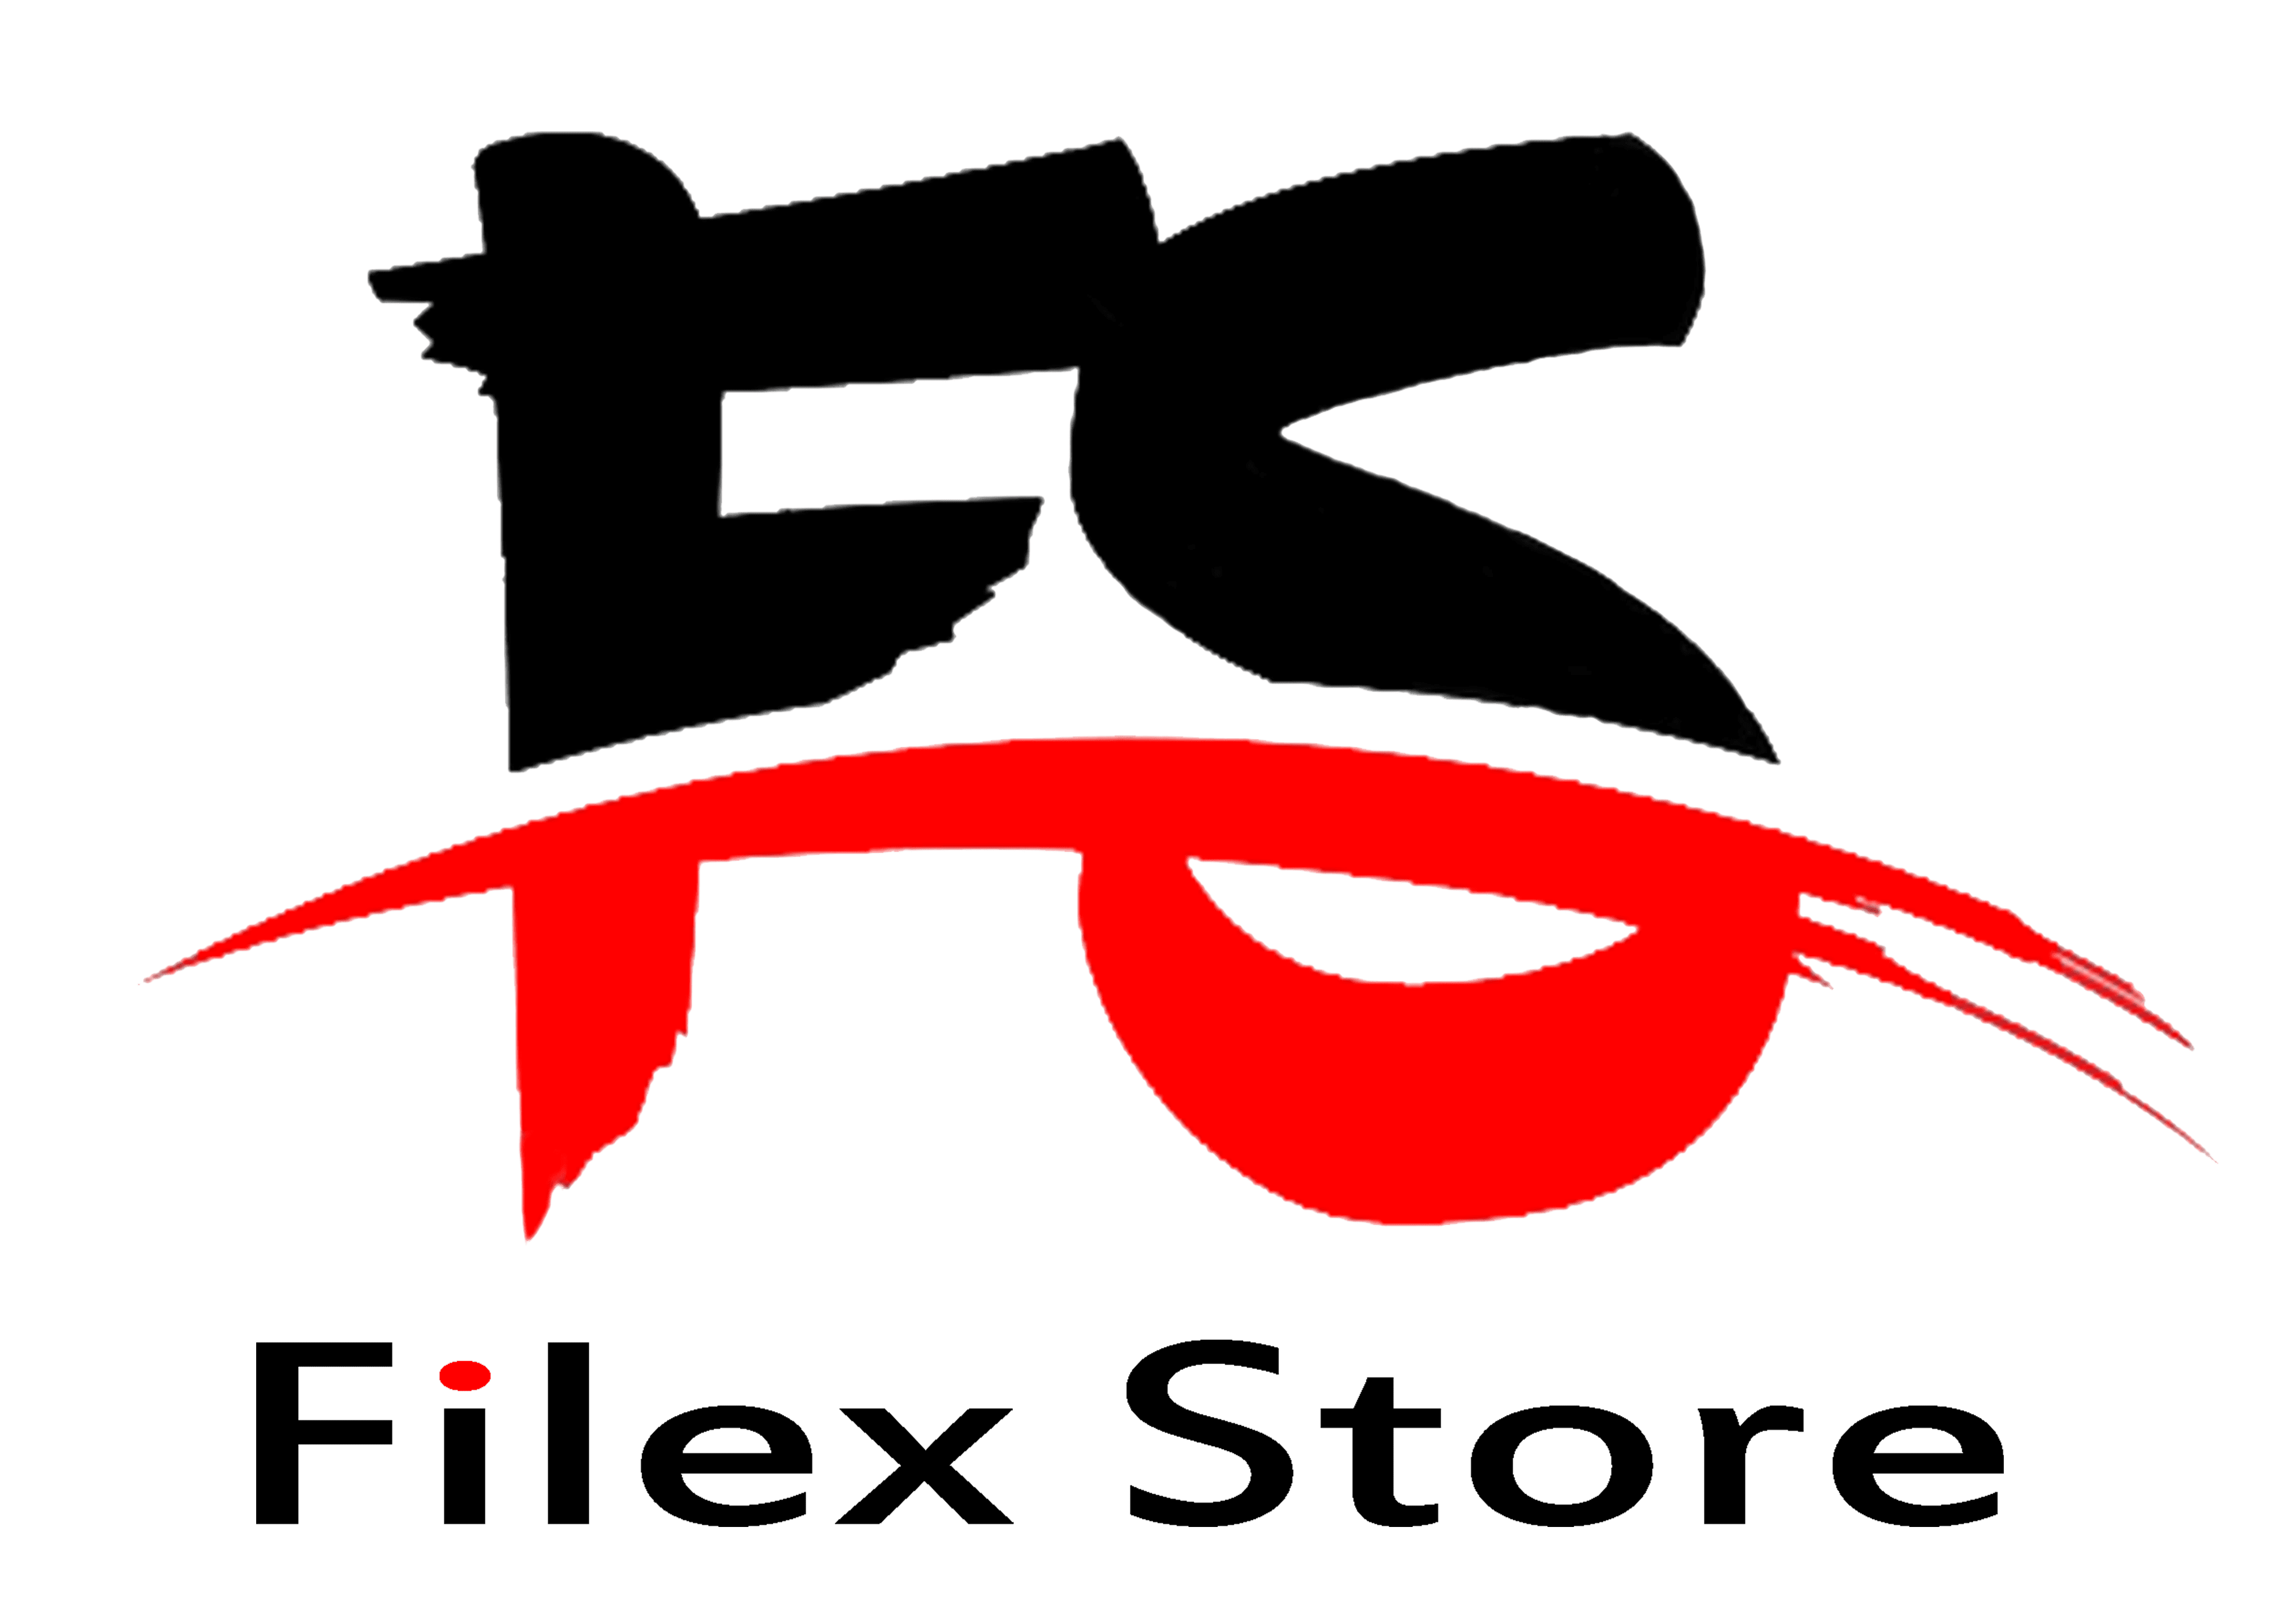 Filex Store